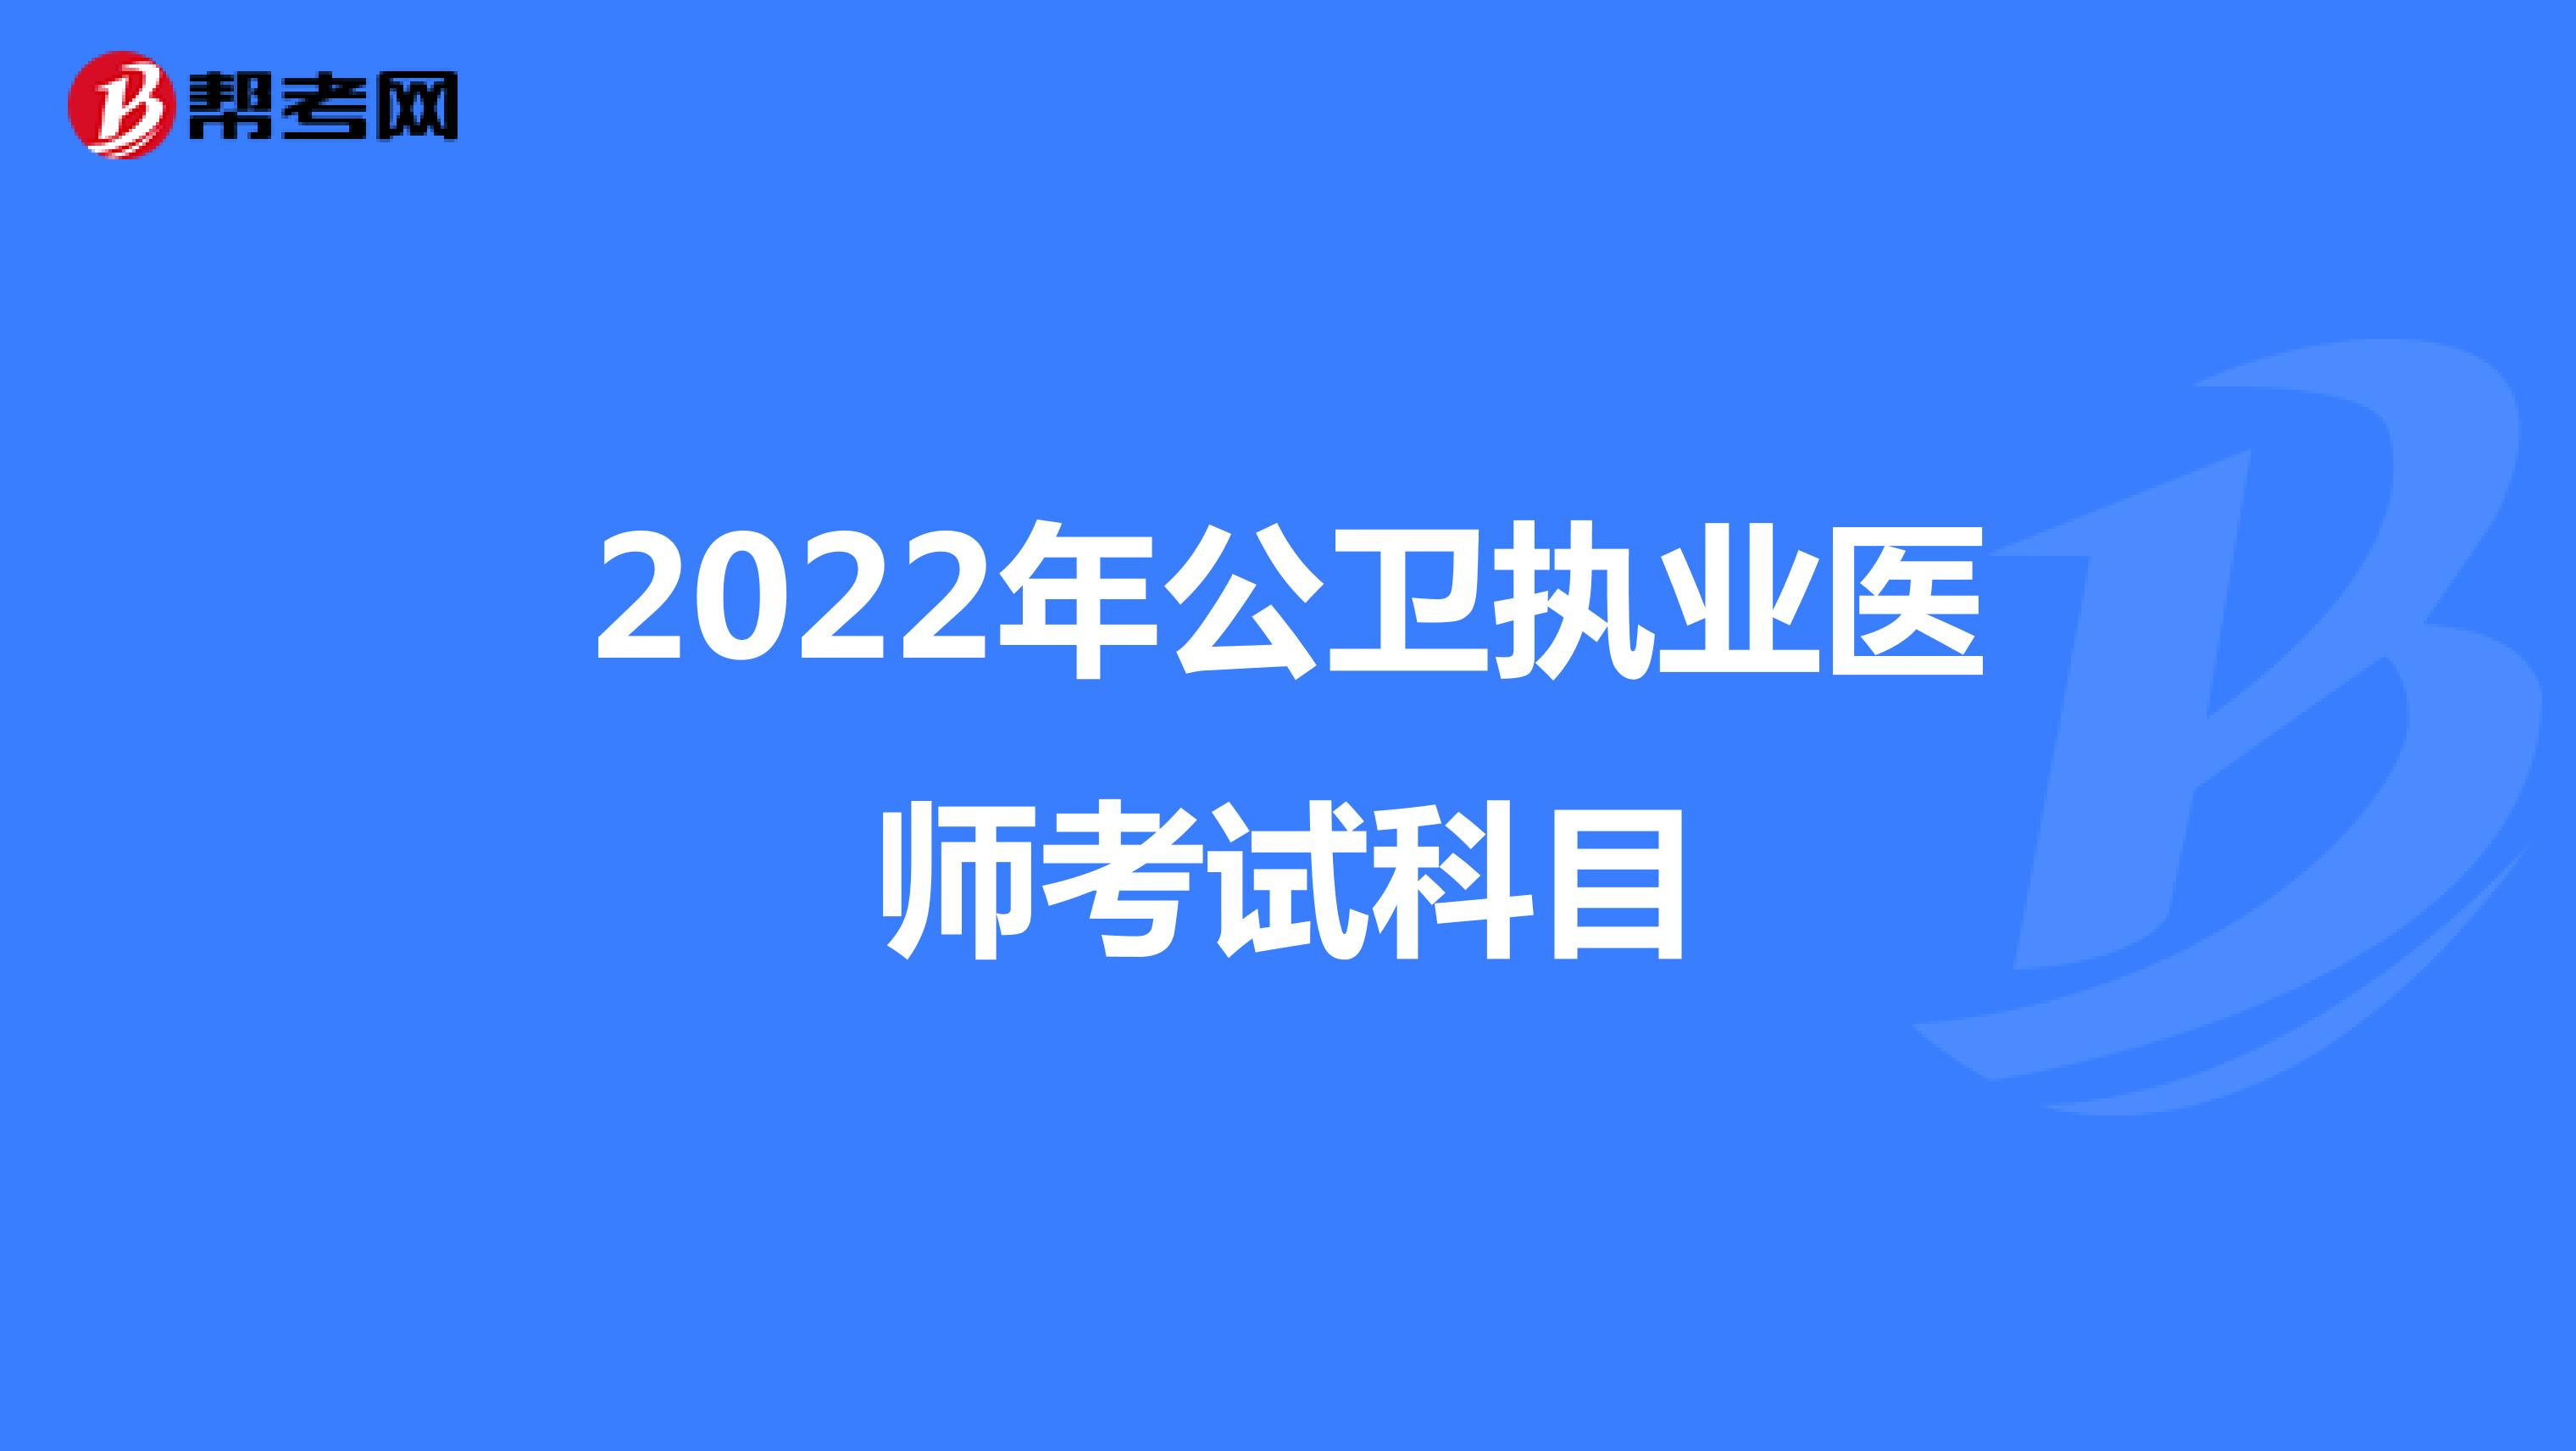 2022年公卫执业医师考试科目